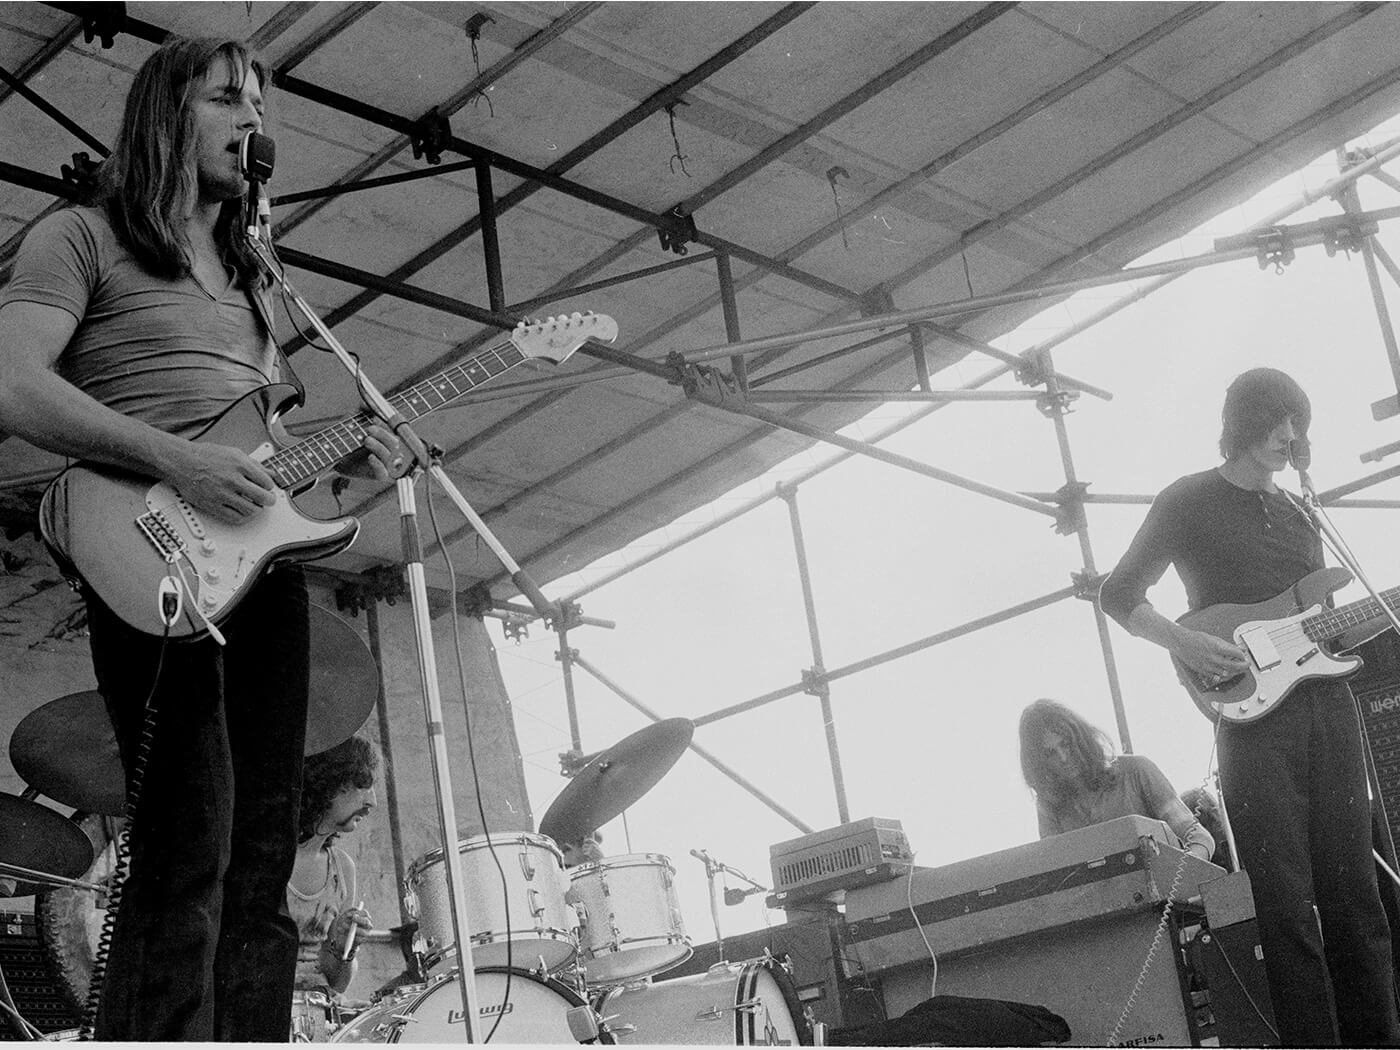 Pink Floyd performing in 1970